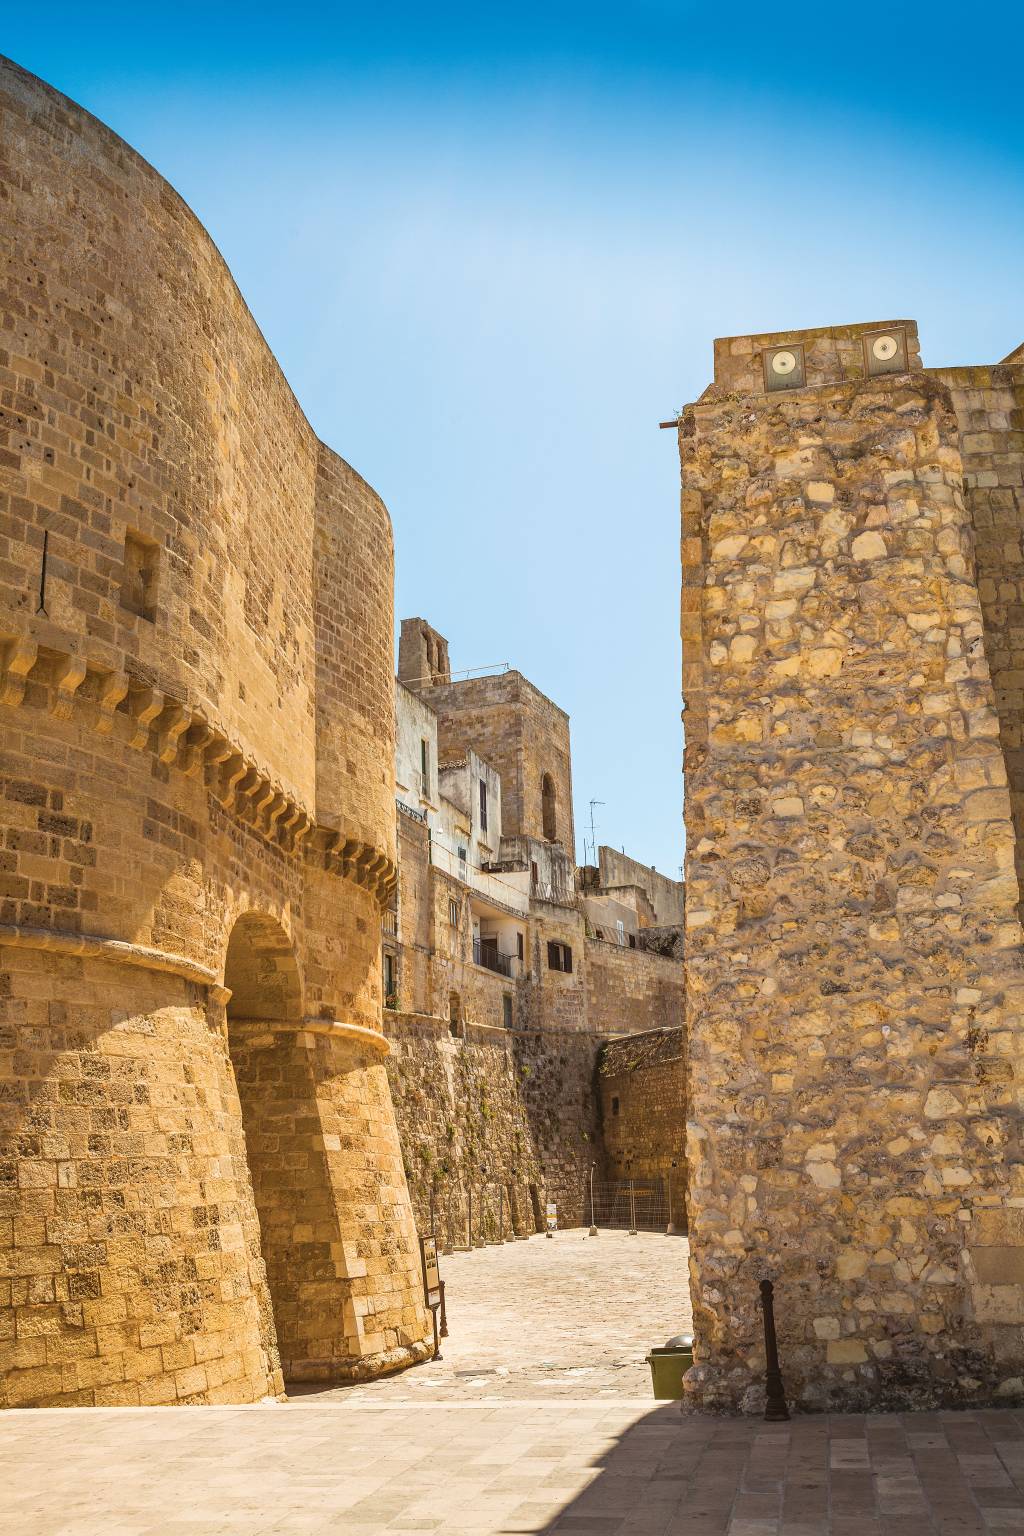 Um beco com altas paredes de tijolos, as quais formam uma seção da muralha de Gallipoli